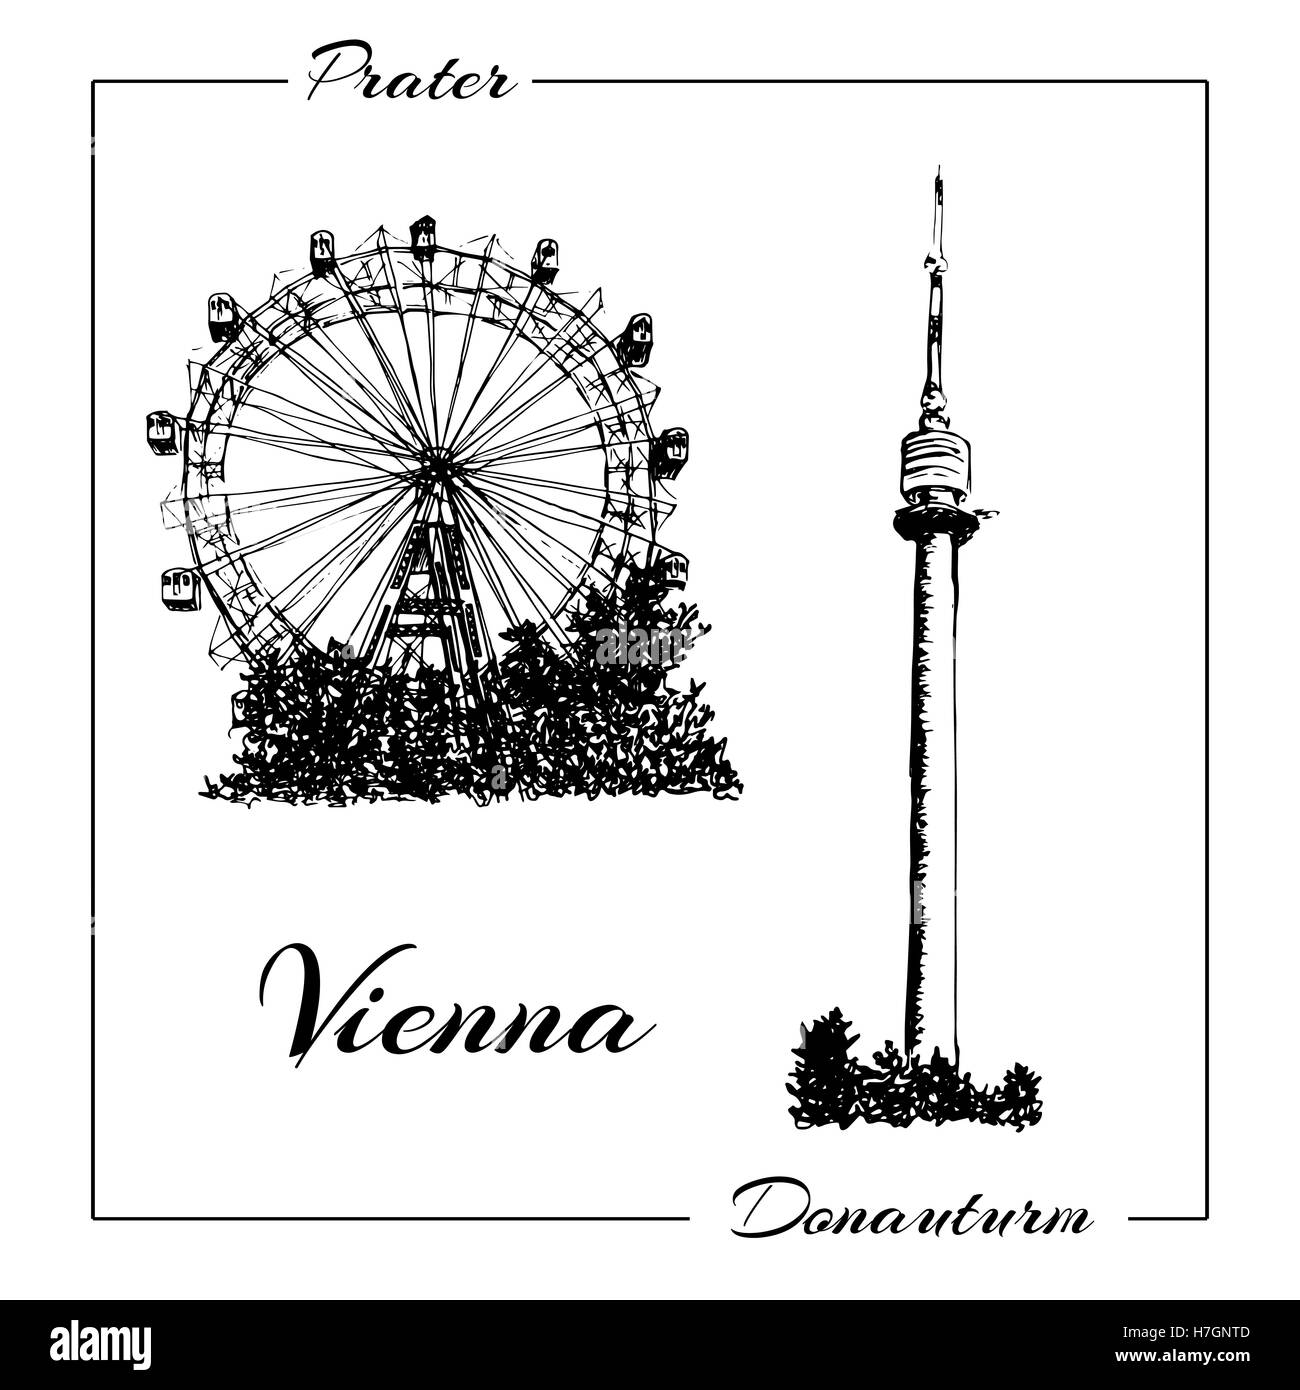 Prater de Vienne et donauturm. Vector illustration croquis dessinés à la main. peut être utilisé à la publicité, cartes postales, gravures Banque D'Images